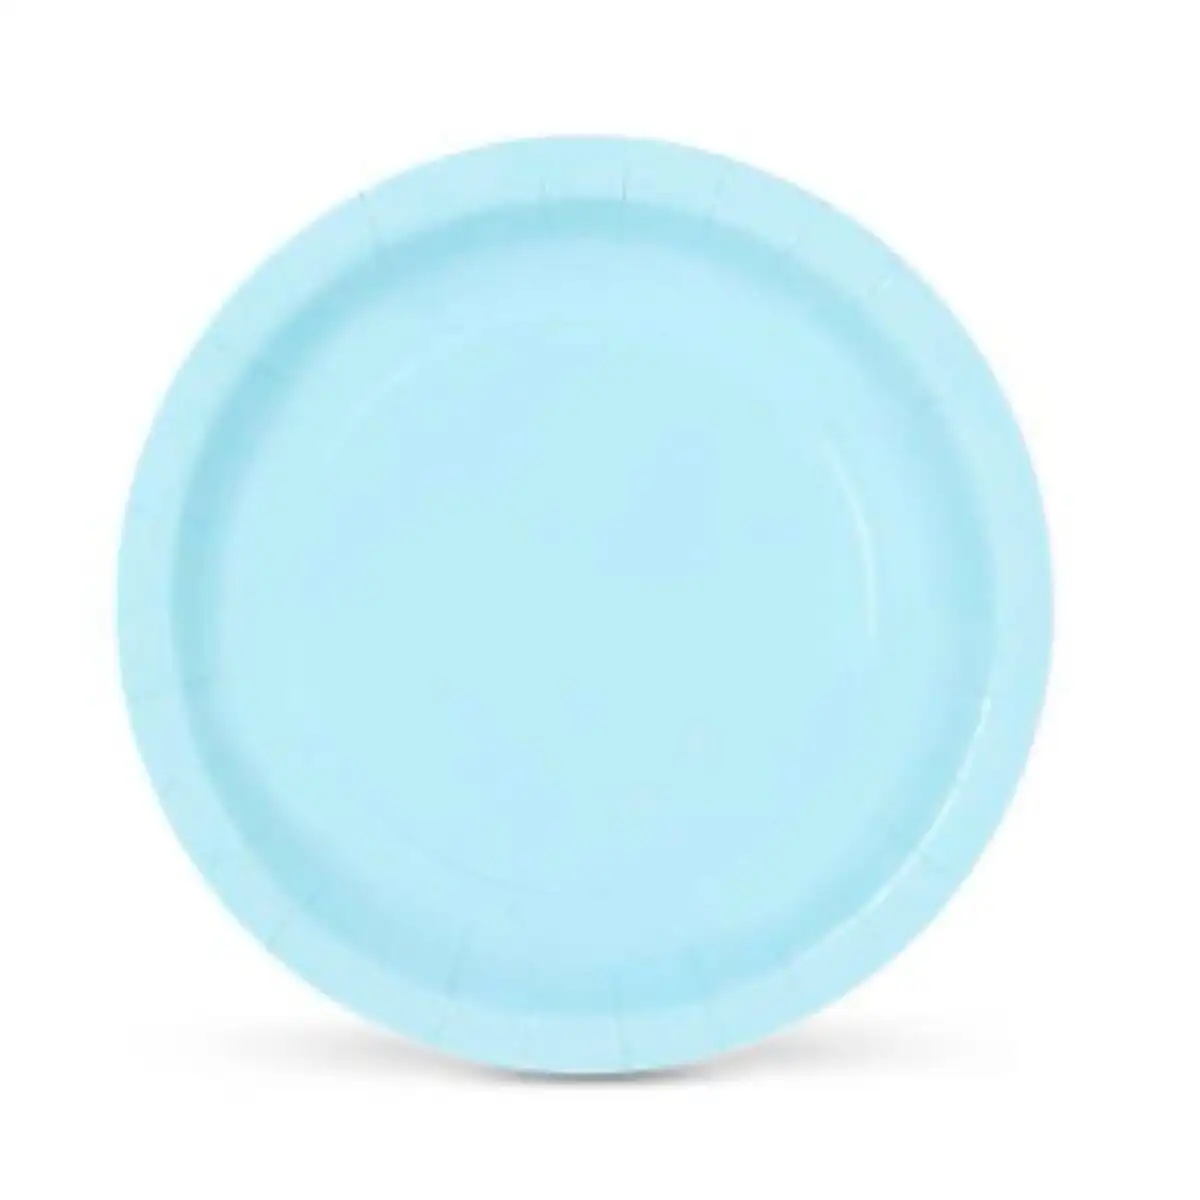 Service de vaisselle algon carton produits a usage unique 20 cm bleu 10 unites_4748. Découvrez DIAYTAR SENEGAL - Là où le Choix Rencontre la Qualité. Parcourez notre gamme diversifiée et choisissez parmi des produits conçus pour exceller dans tous les aspects de votre vie.